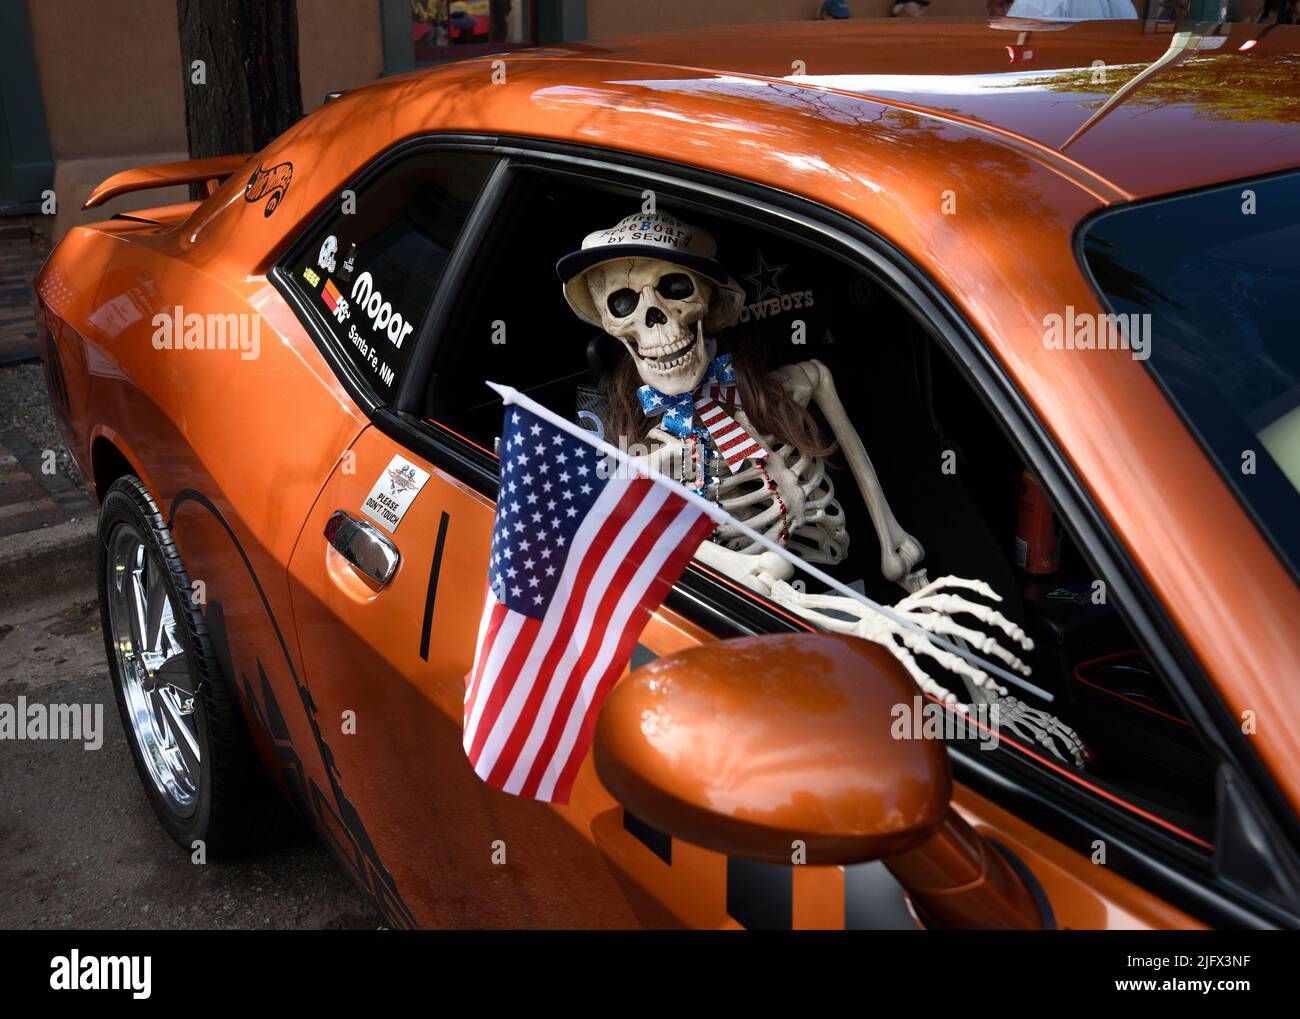 Ein neuheitliches Kunststoff-Skelett hält eine amerikanische Flagge in einem Dodge Challenger aus dem Jahr 2011, der auf einer Automobilausstellung am 4. Juli in Santa Fe, New Mexico, ausgestellt wird. Stockfoto